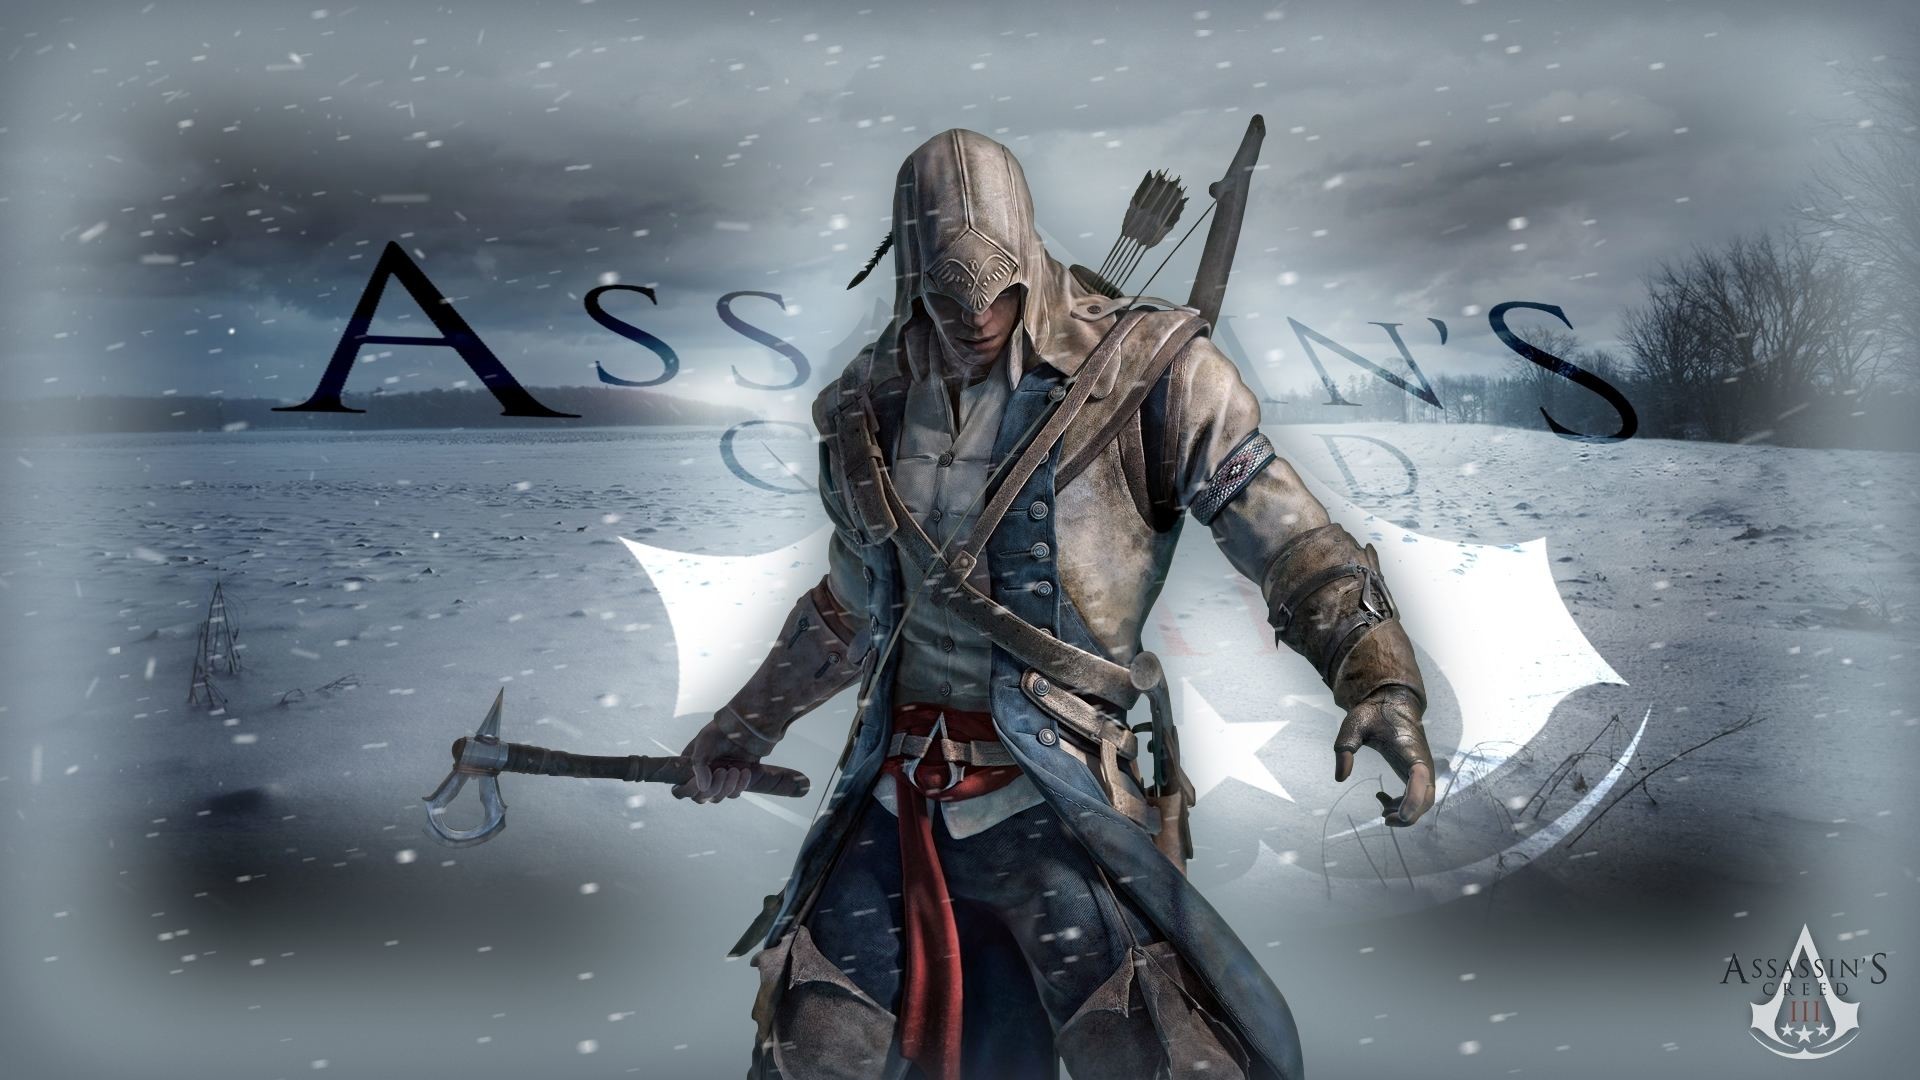 1920x1080 Assassin's Creed 3 Wallpaper Hd 1080P - 1403489